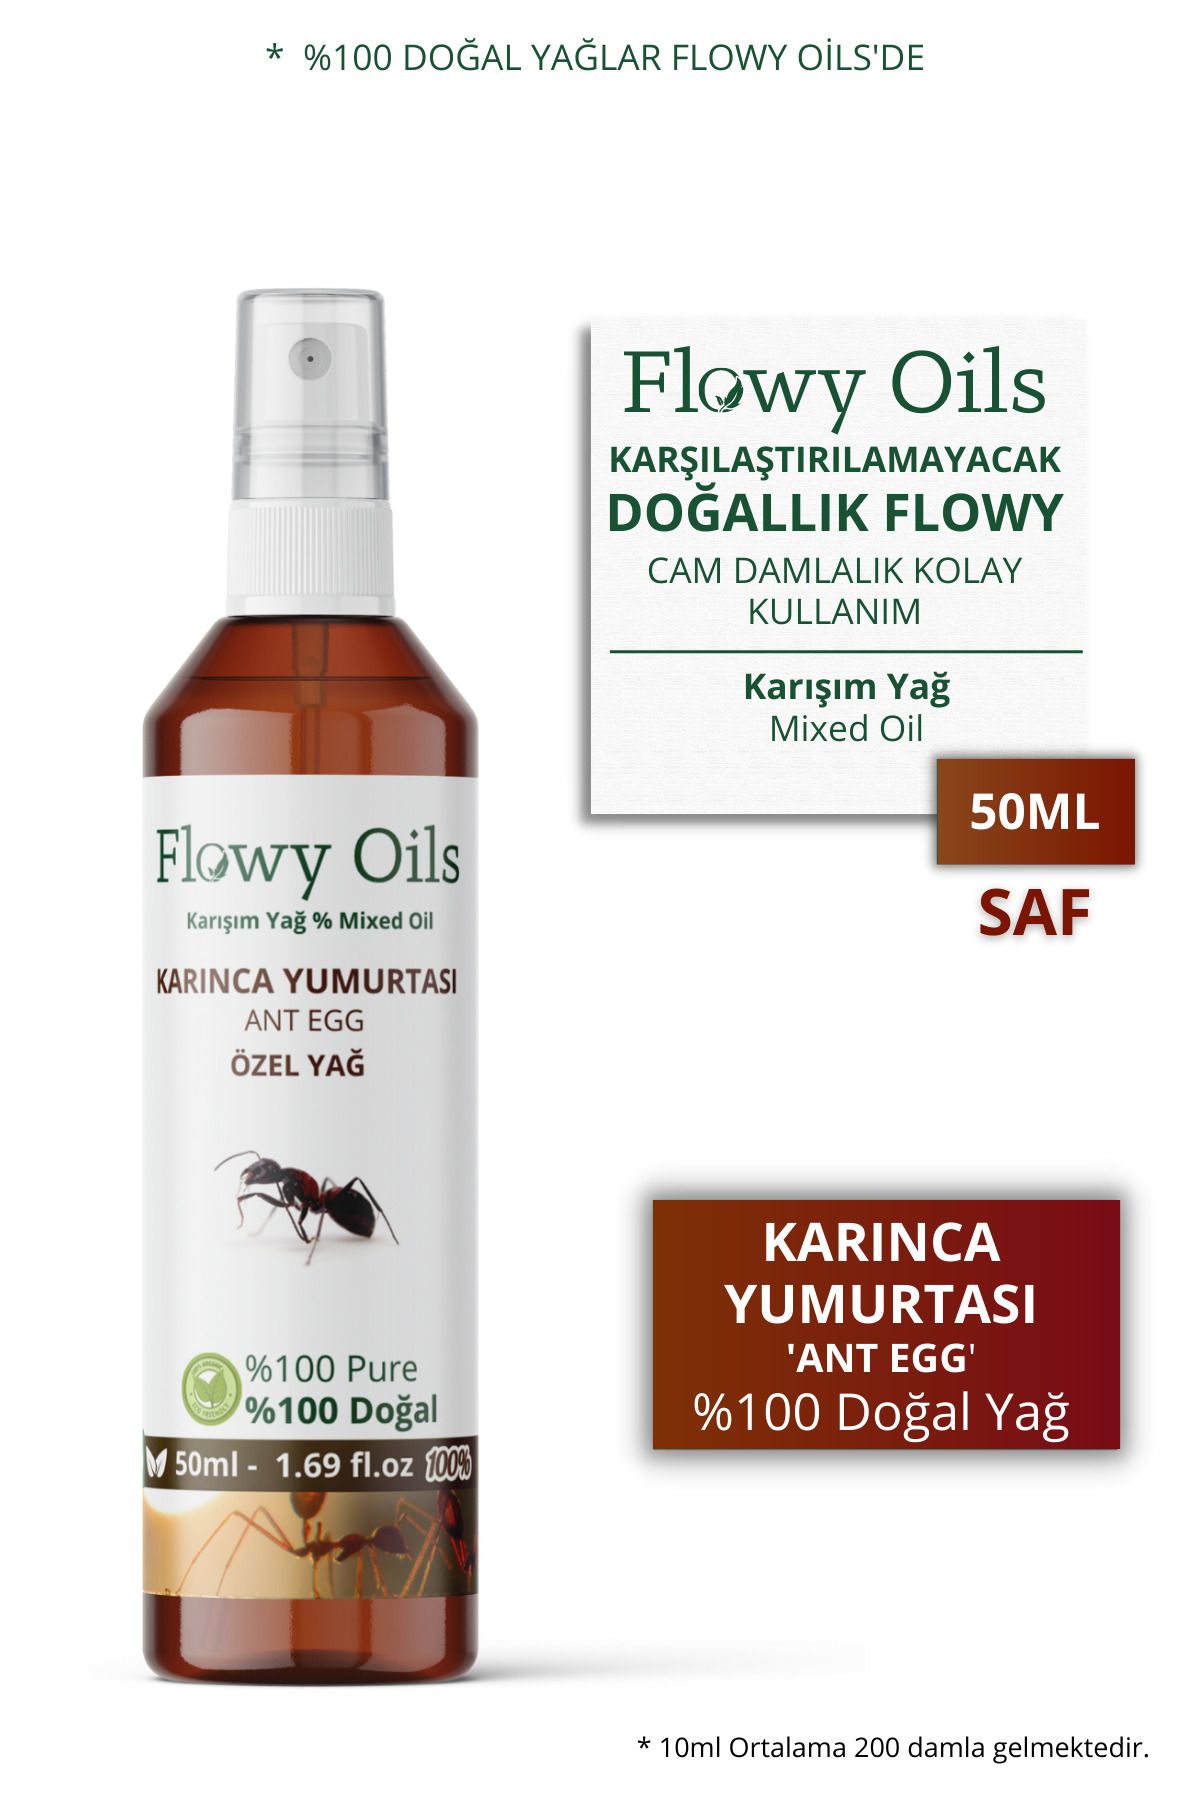 Flowy Oils Karınca Yumurtası Yağı Tüy Azaltıcı Bitkisel Yağ 50ml